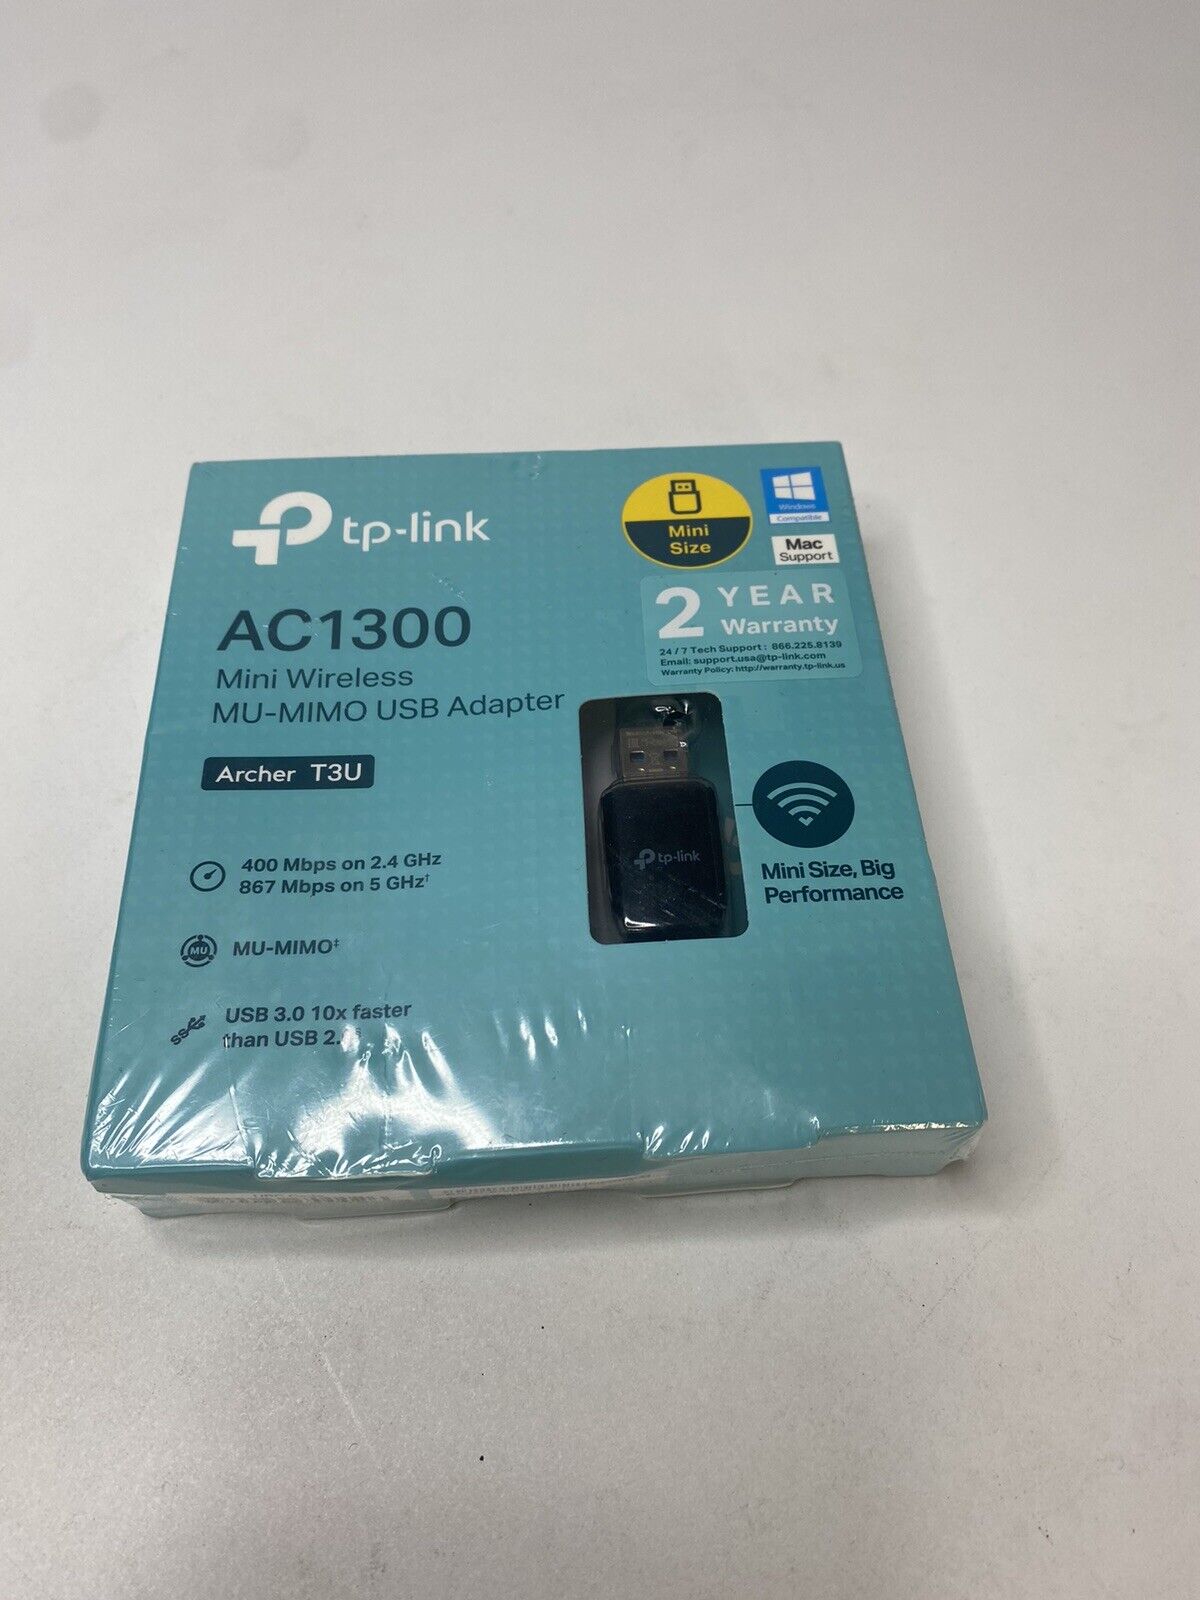 TP-Link Archer T3U AC1300 Mini Wireless Dual Band MU-MIMO USB 3.0 Wi-Fi Adapter